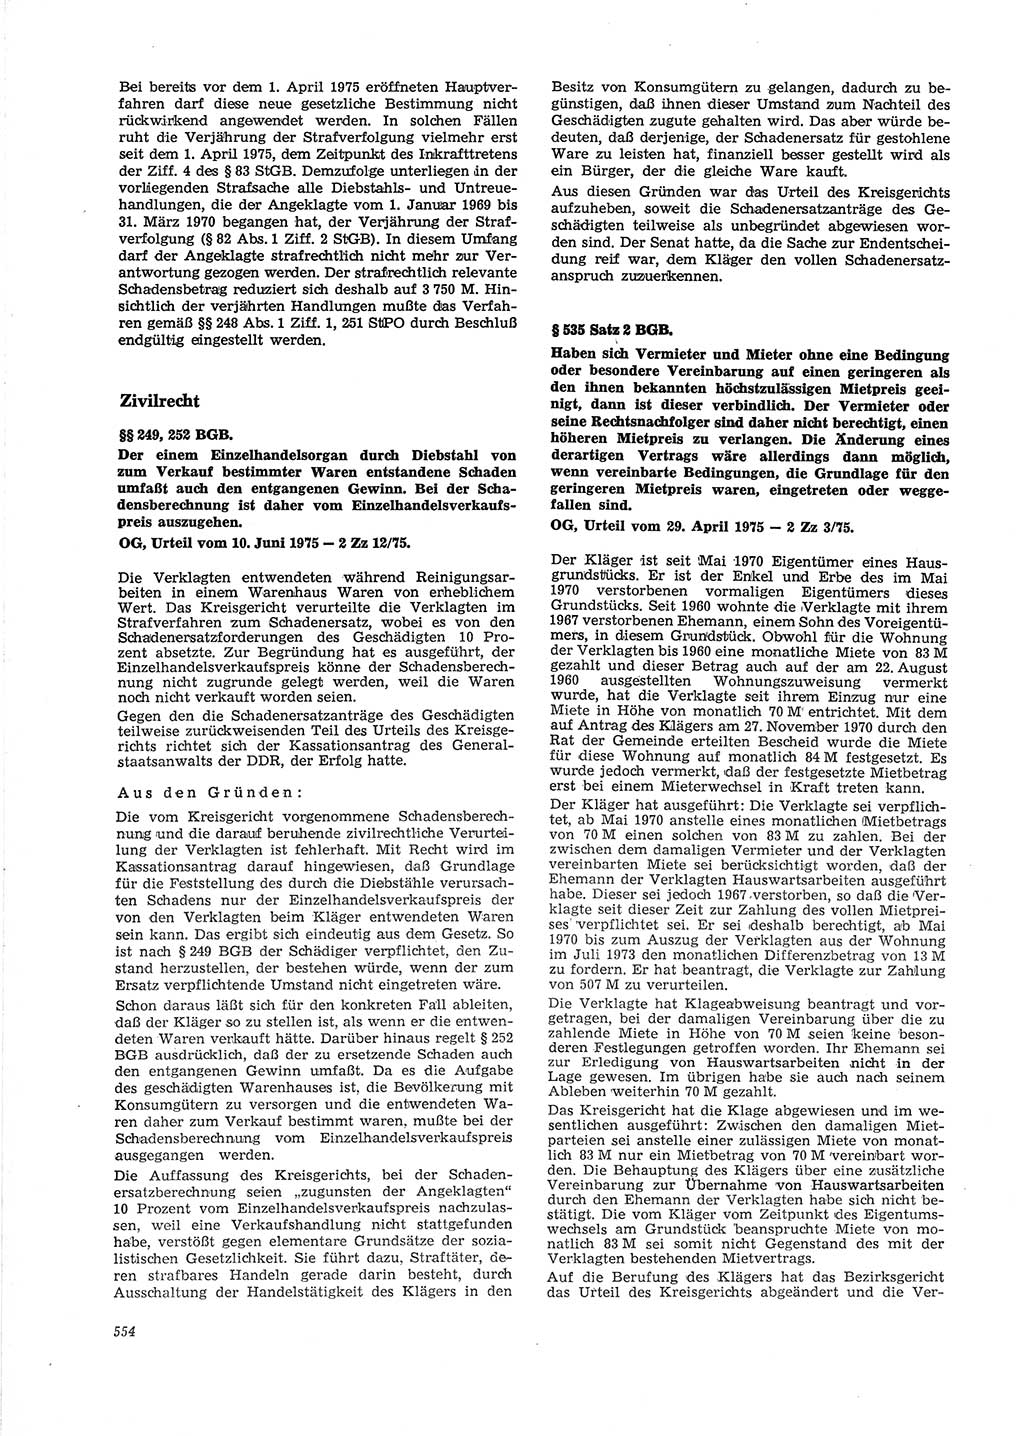 Neue Justiz (NJ), Zeitschrift für Recht und Rechtswissenschaft [Deutsche Demokratische Republik (DDR)], 29. Jahrgang 1975, Seite 554 (NJ DDR 1975, S. 554)